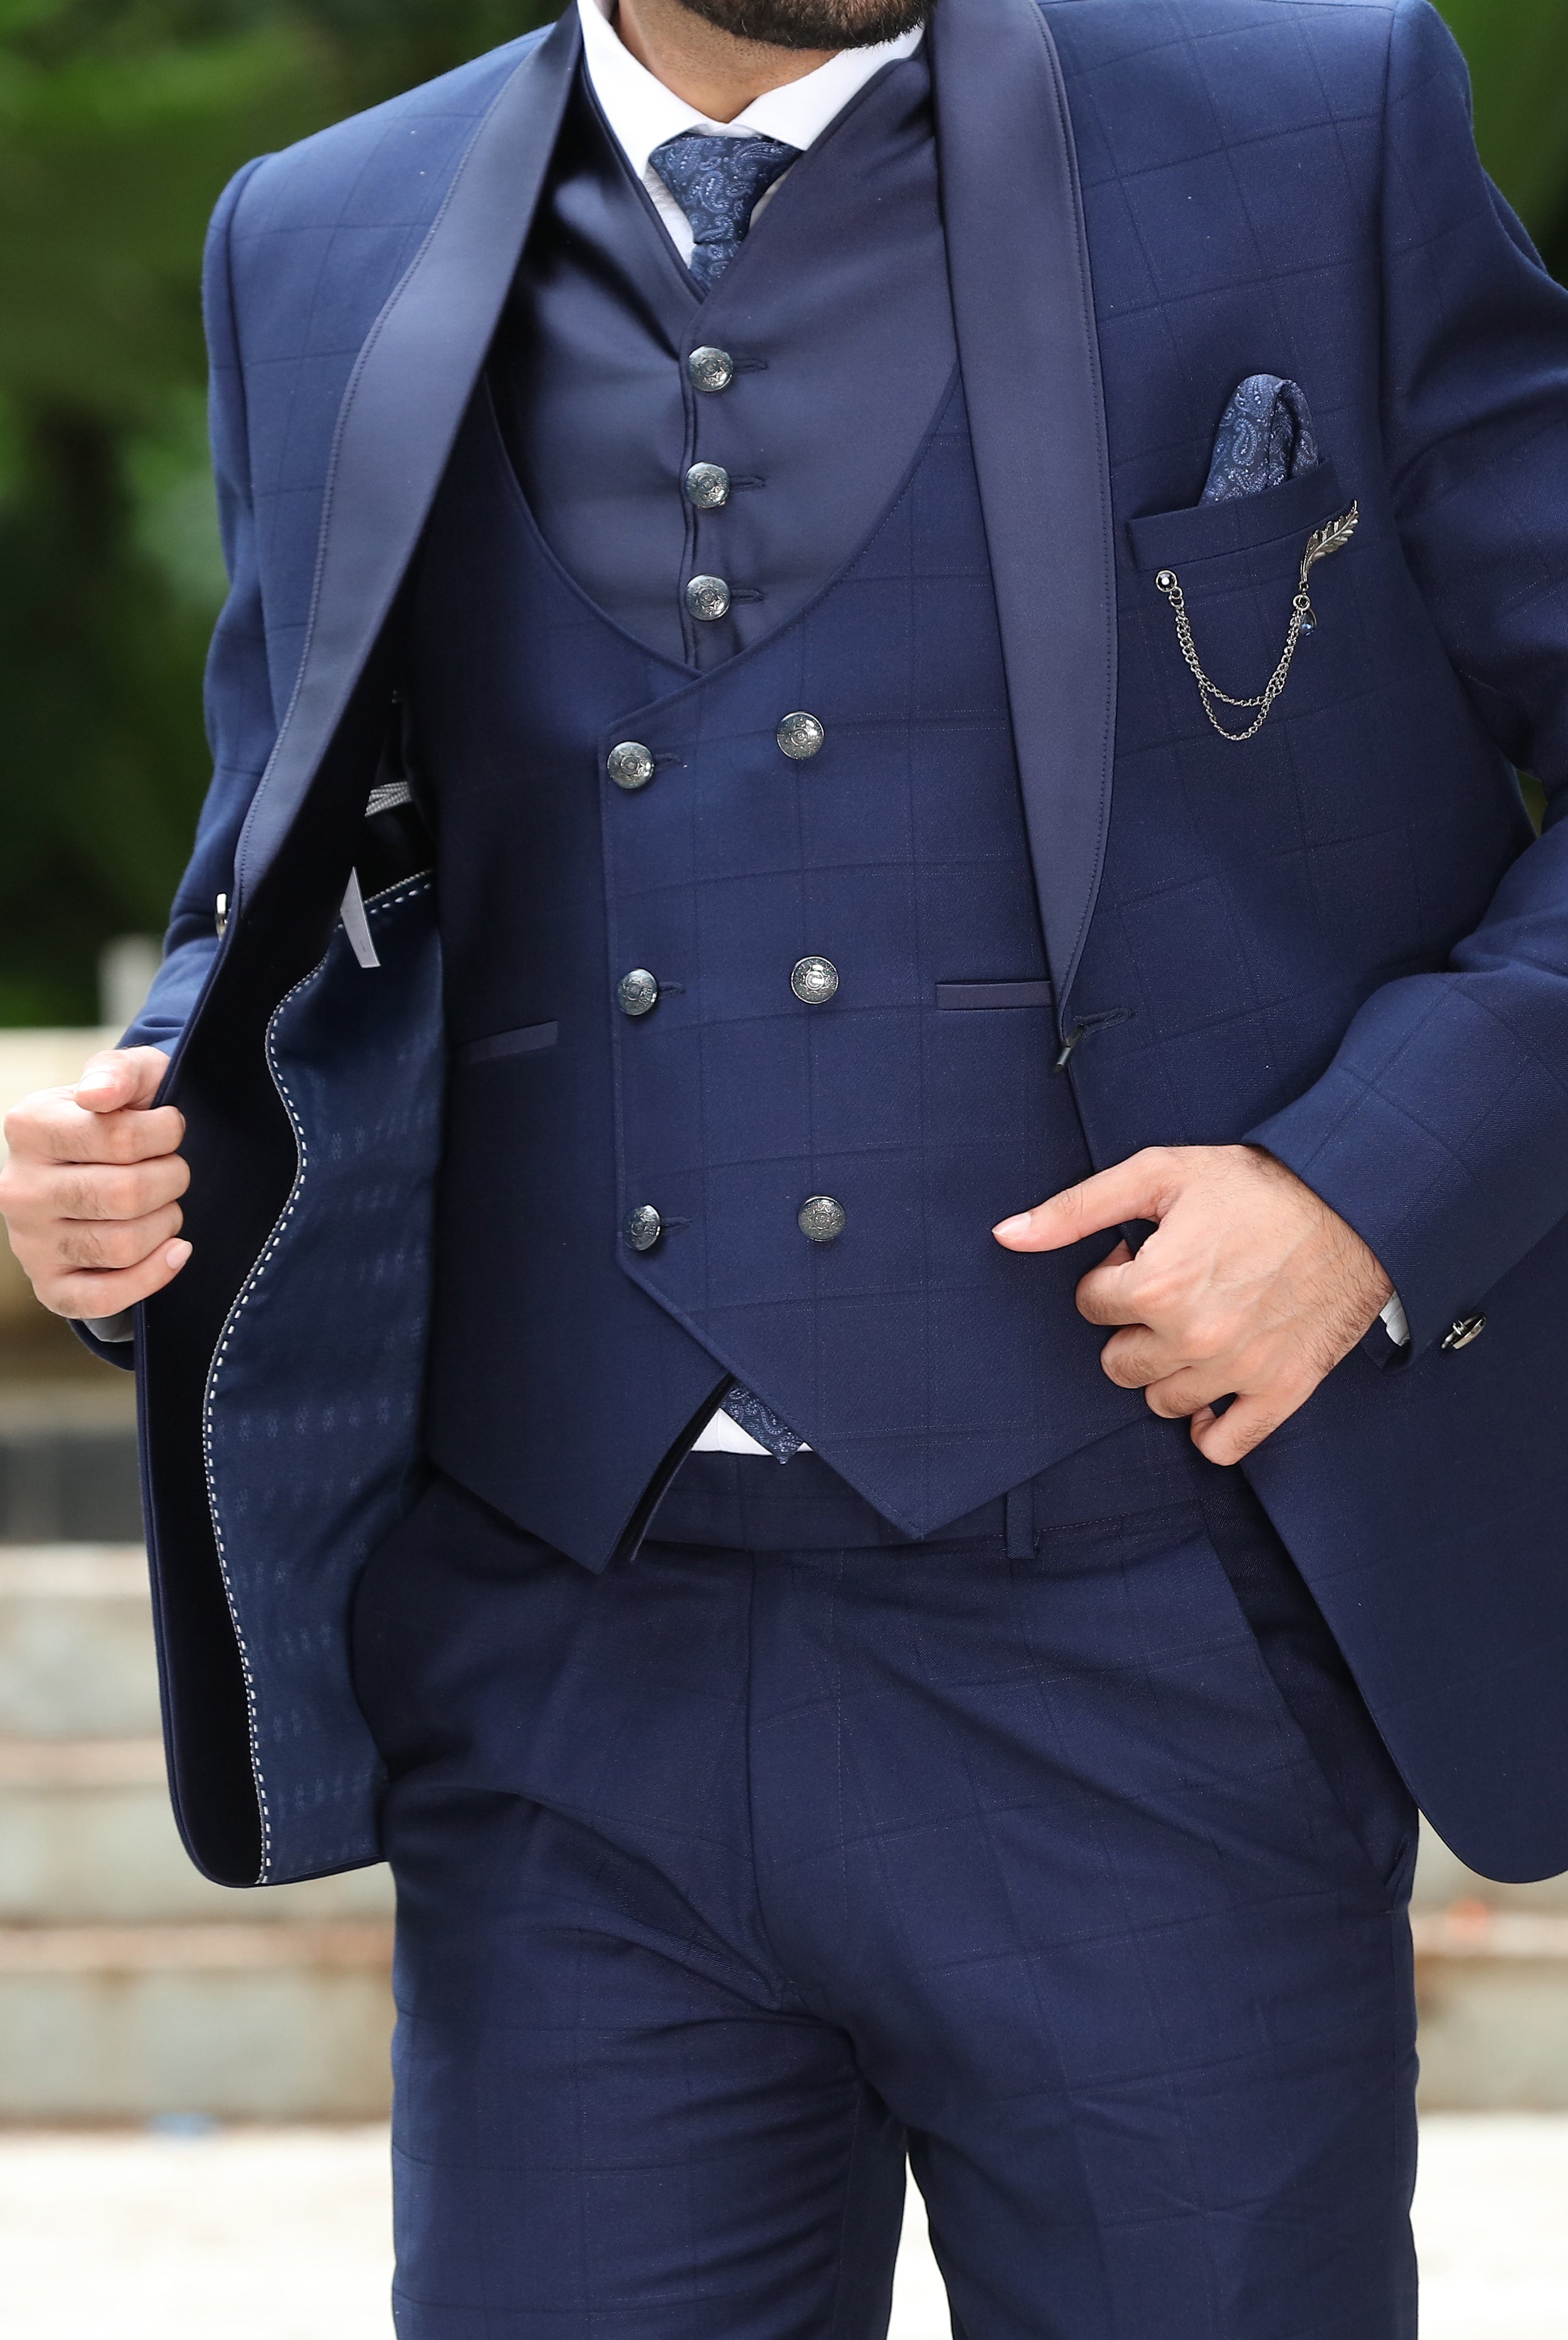 Statement Copper Plaid Wool Suit for Men - Contempo Suits